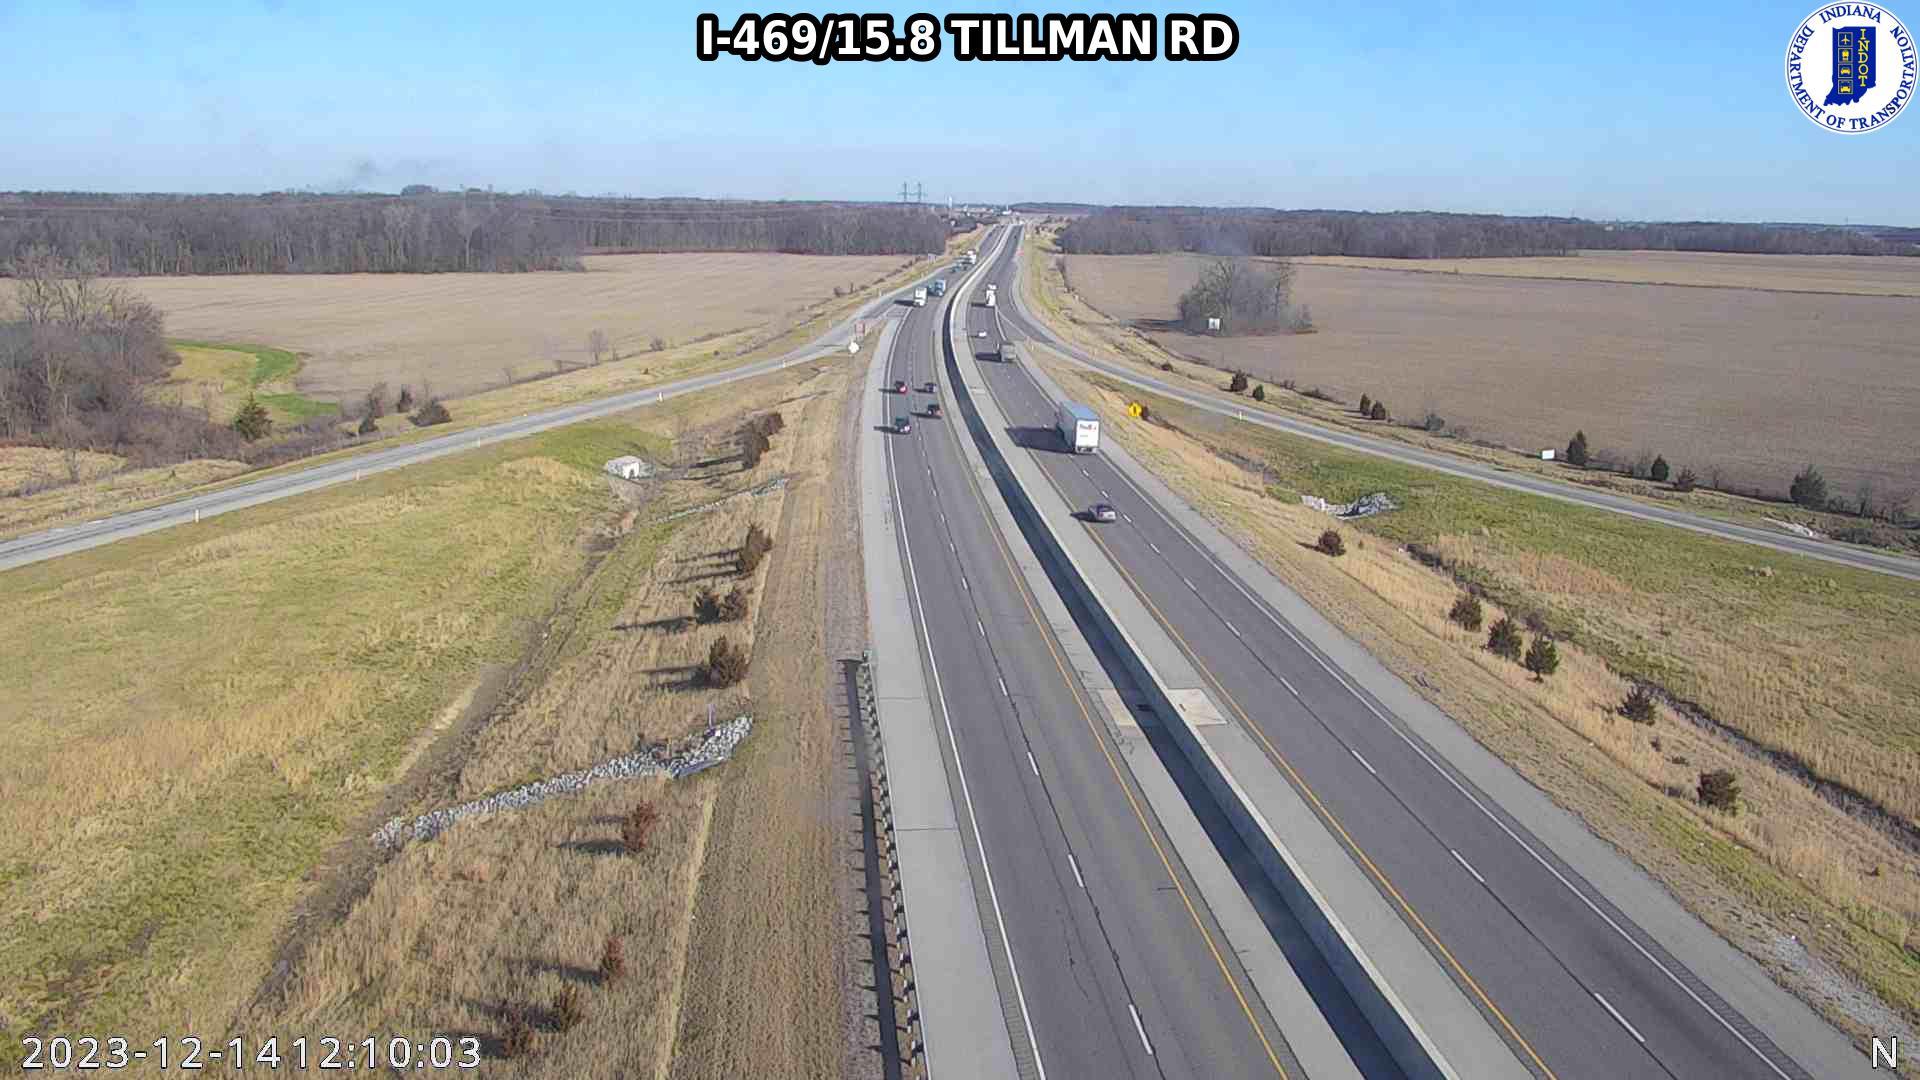 New Haven: I-469: I-469/15.8 TILLMAN RD Traffic Camera